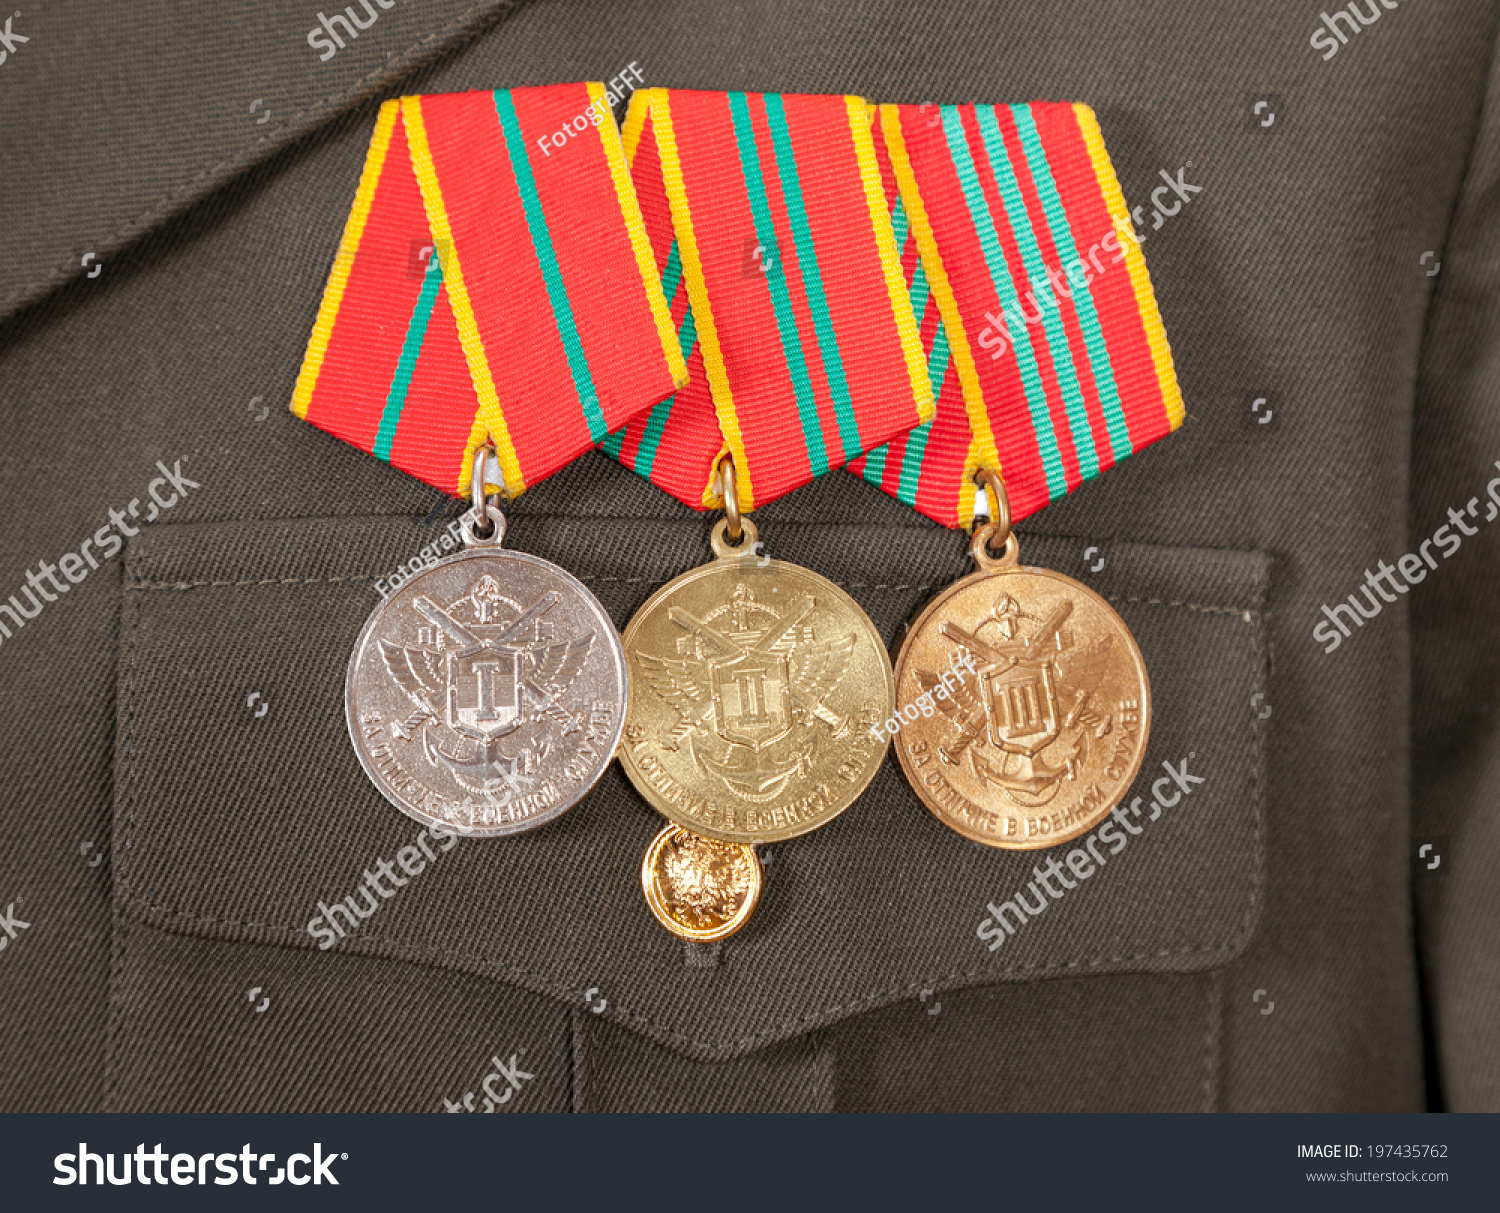 Размещение медалей за выслугу лет